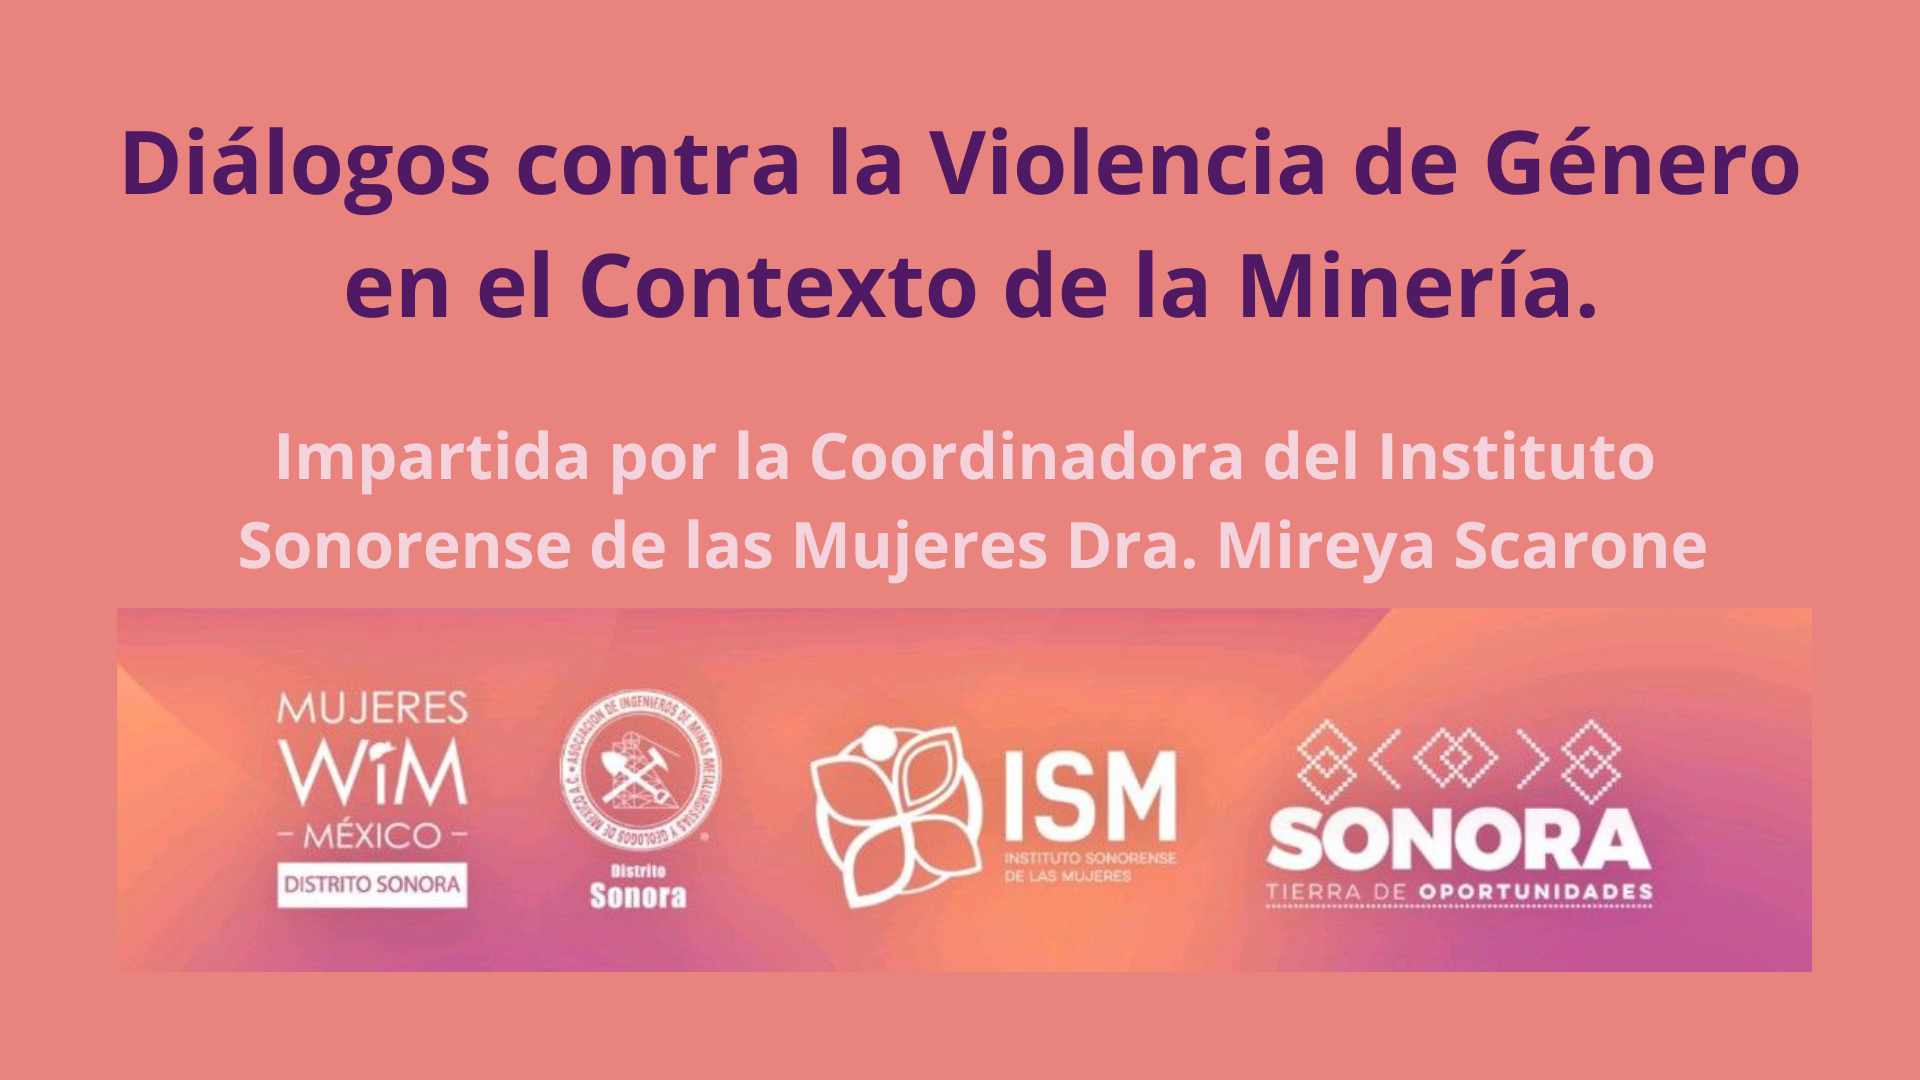 Charla "Diálogos contra la Violencia de Género en el Contexto de la Minería".